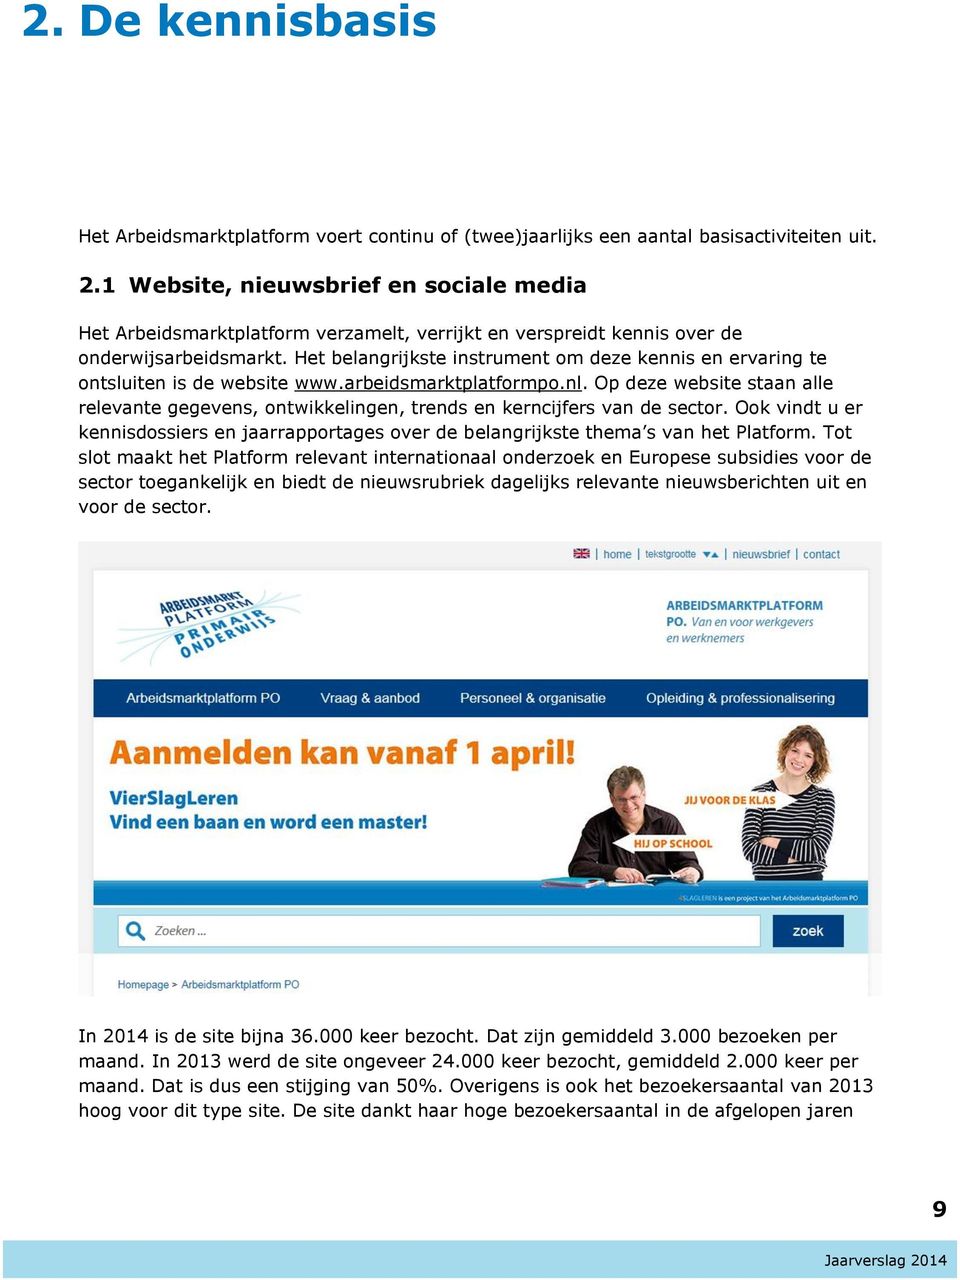 Het belangrijkste instrument om deze kennis en ervaring te ontsluiten is de website www.arbeidsmarktplatformpo.nl.